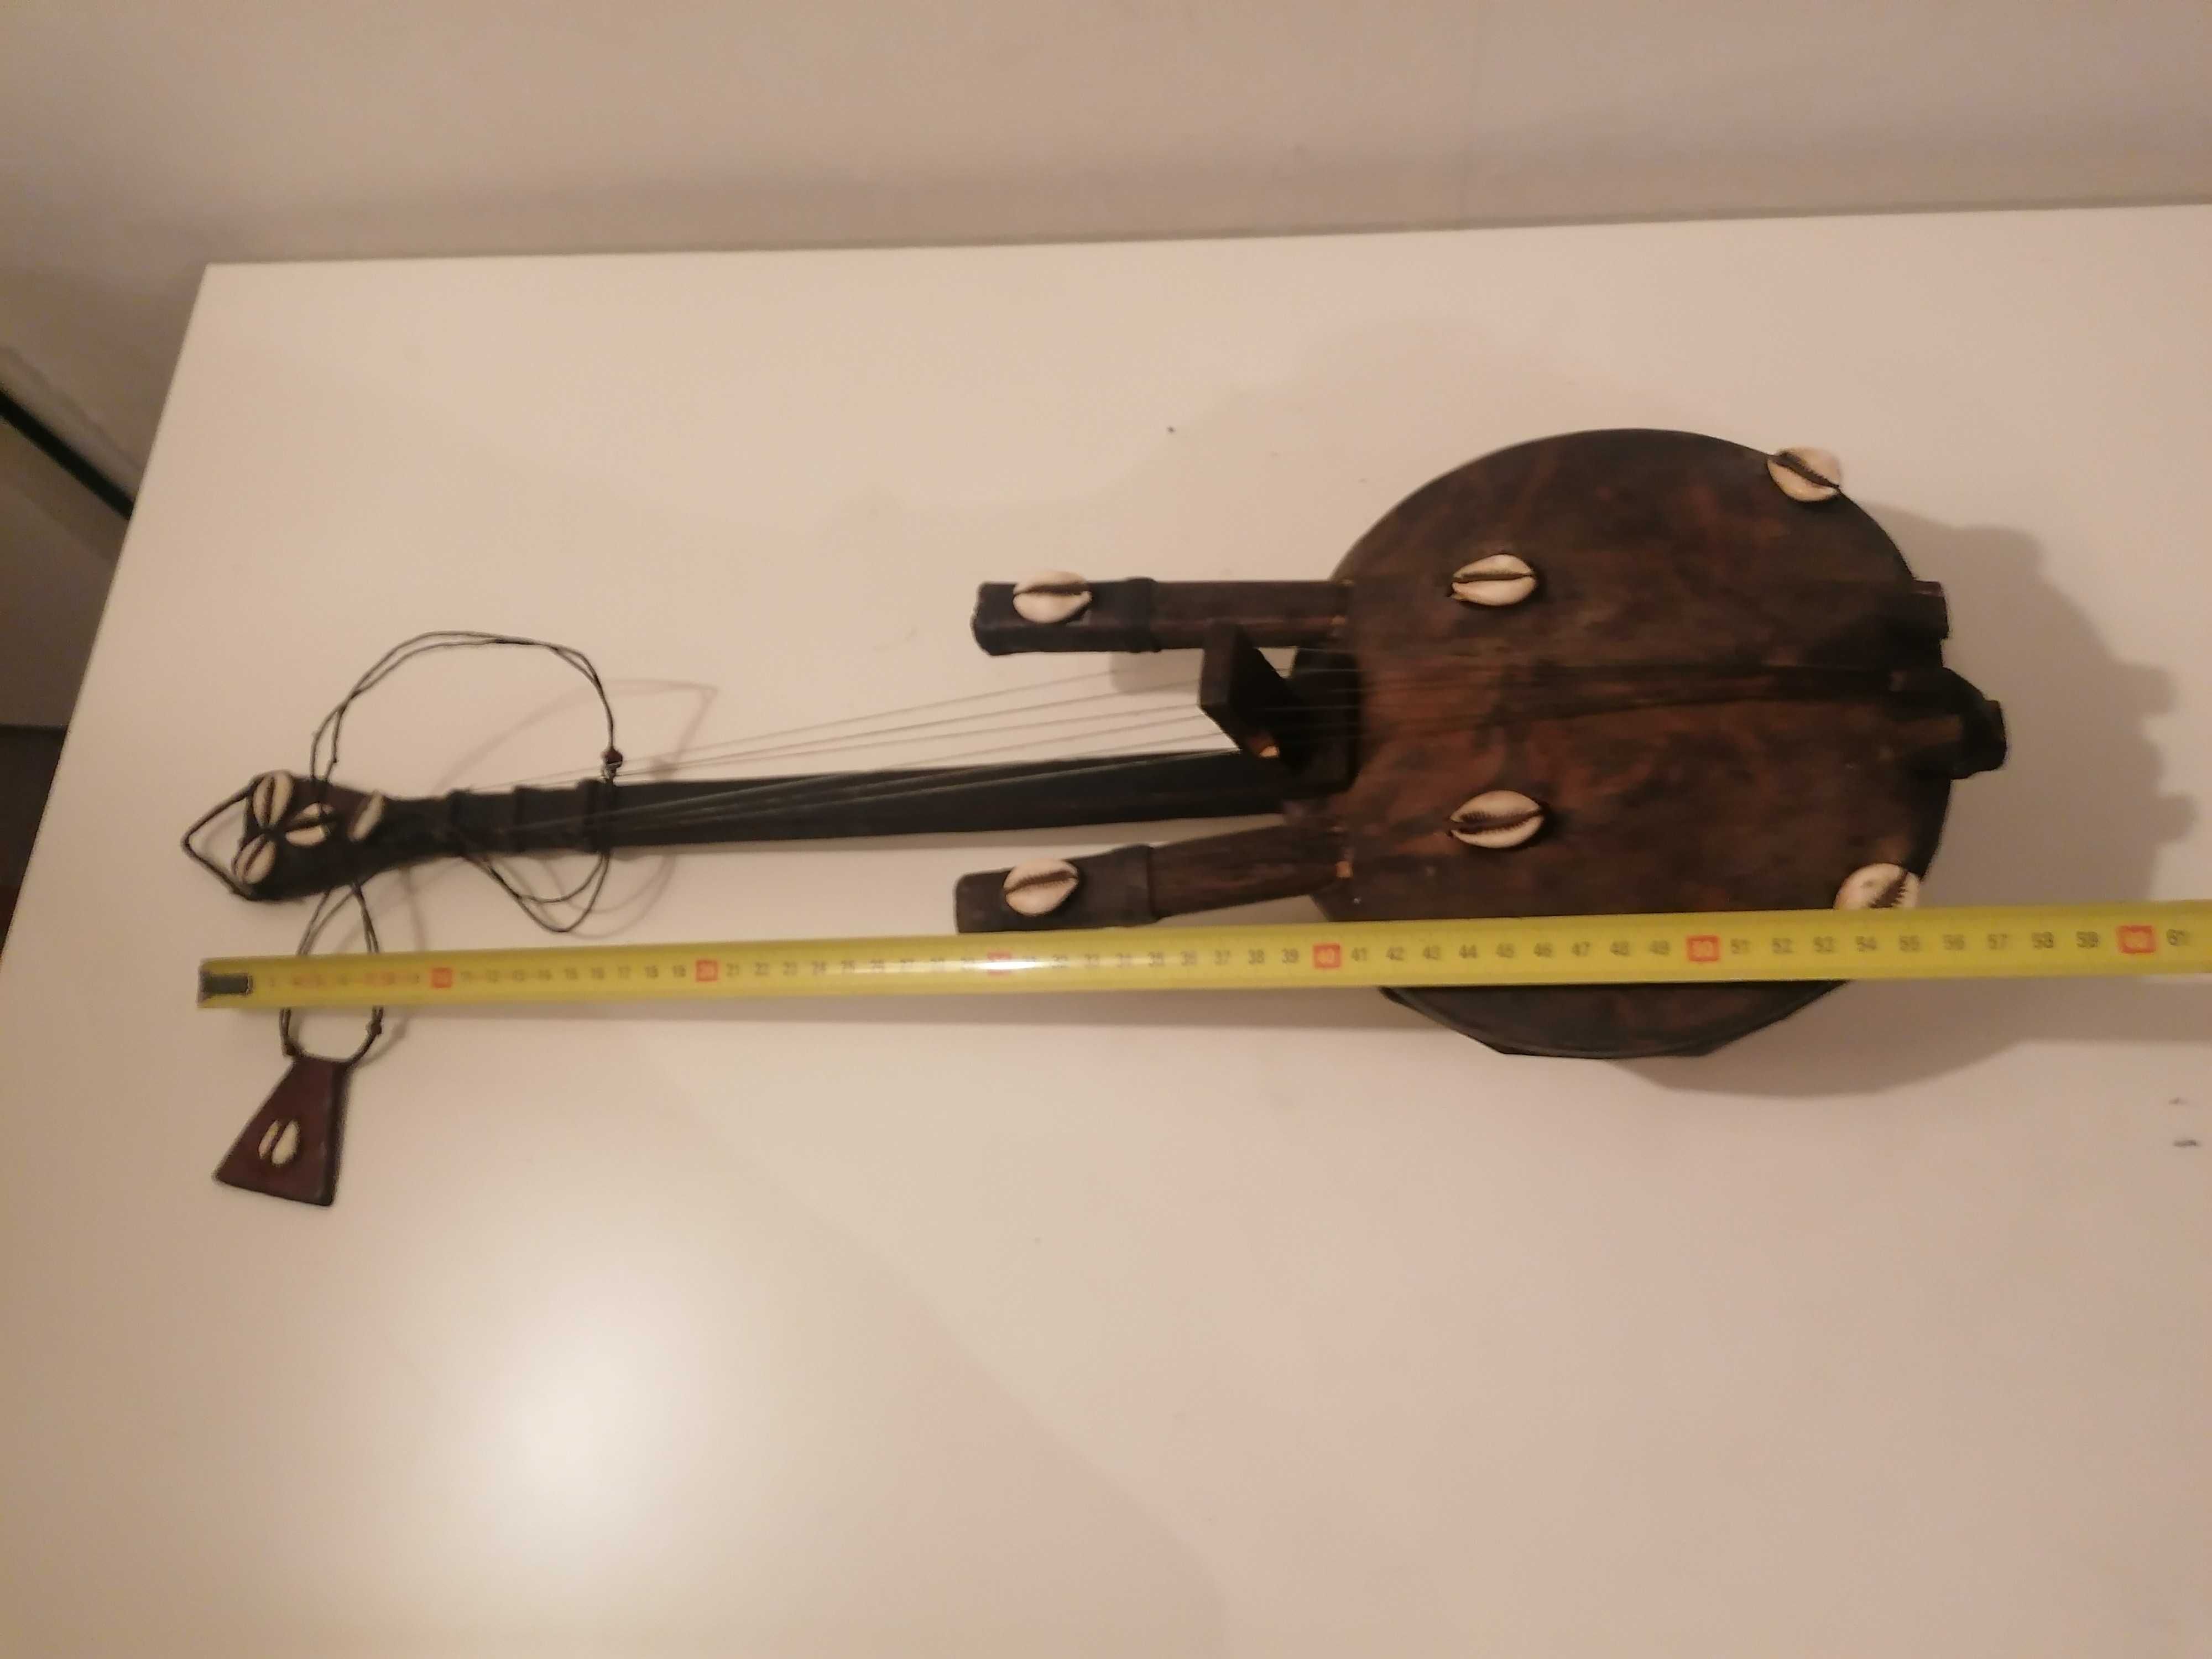 Stary afrykański instrument strunowy